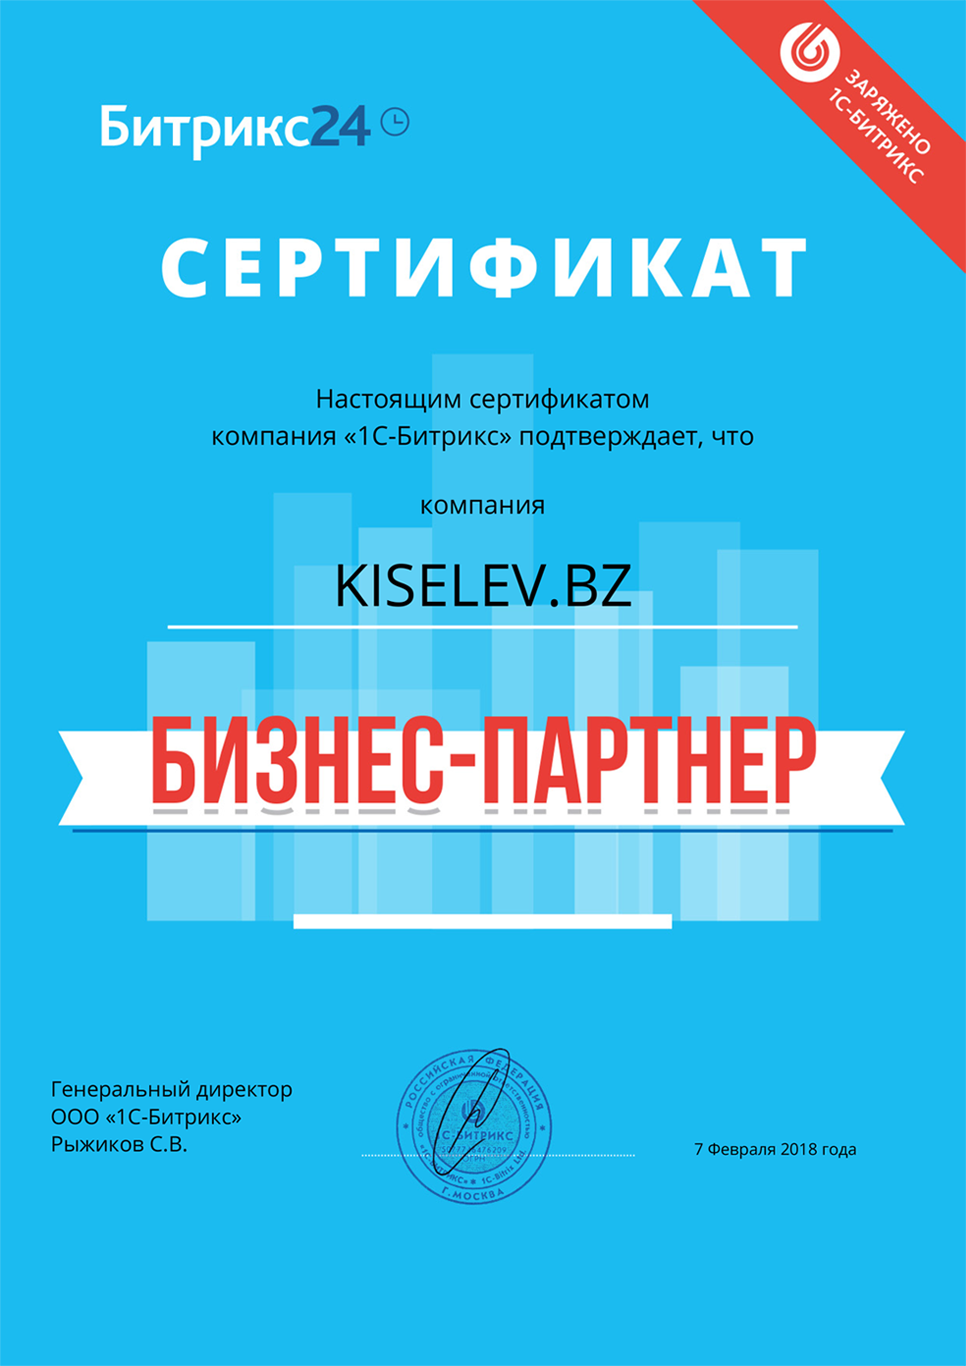 Сертификат партнёра по АМОСРМ в Новопавловске